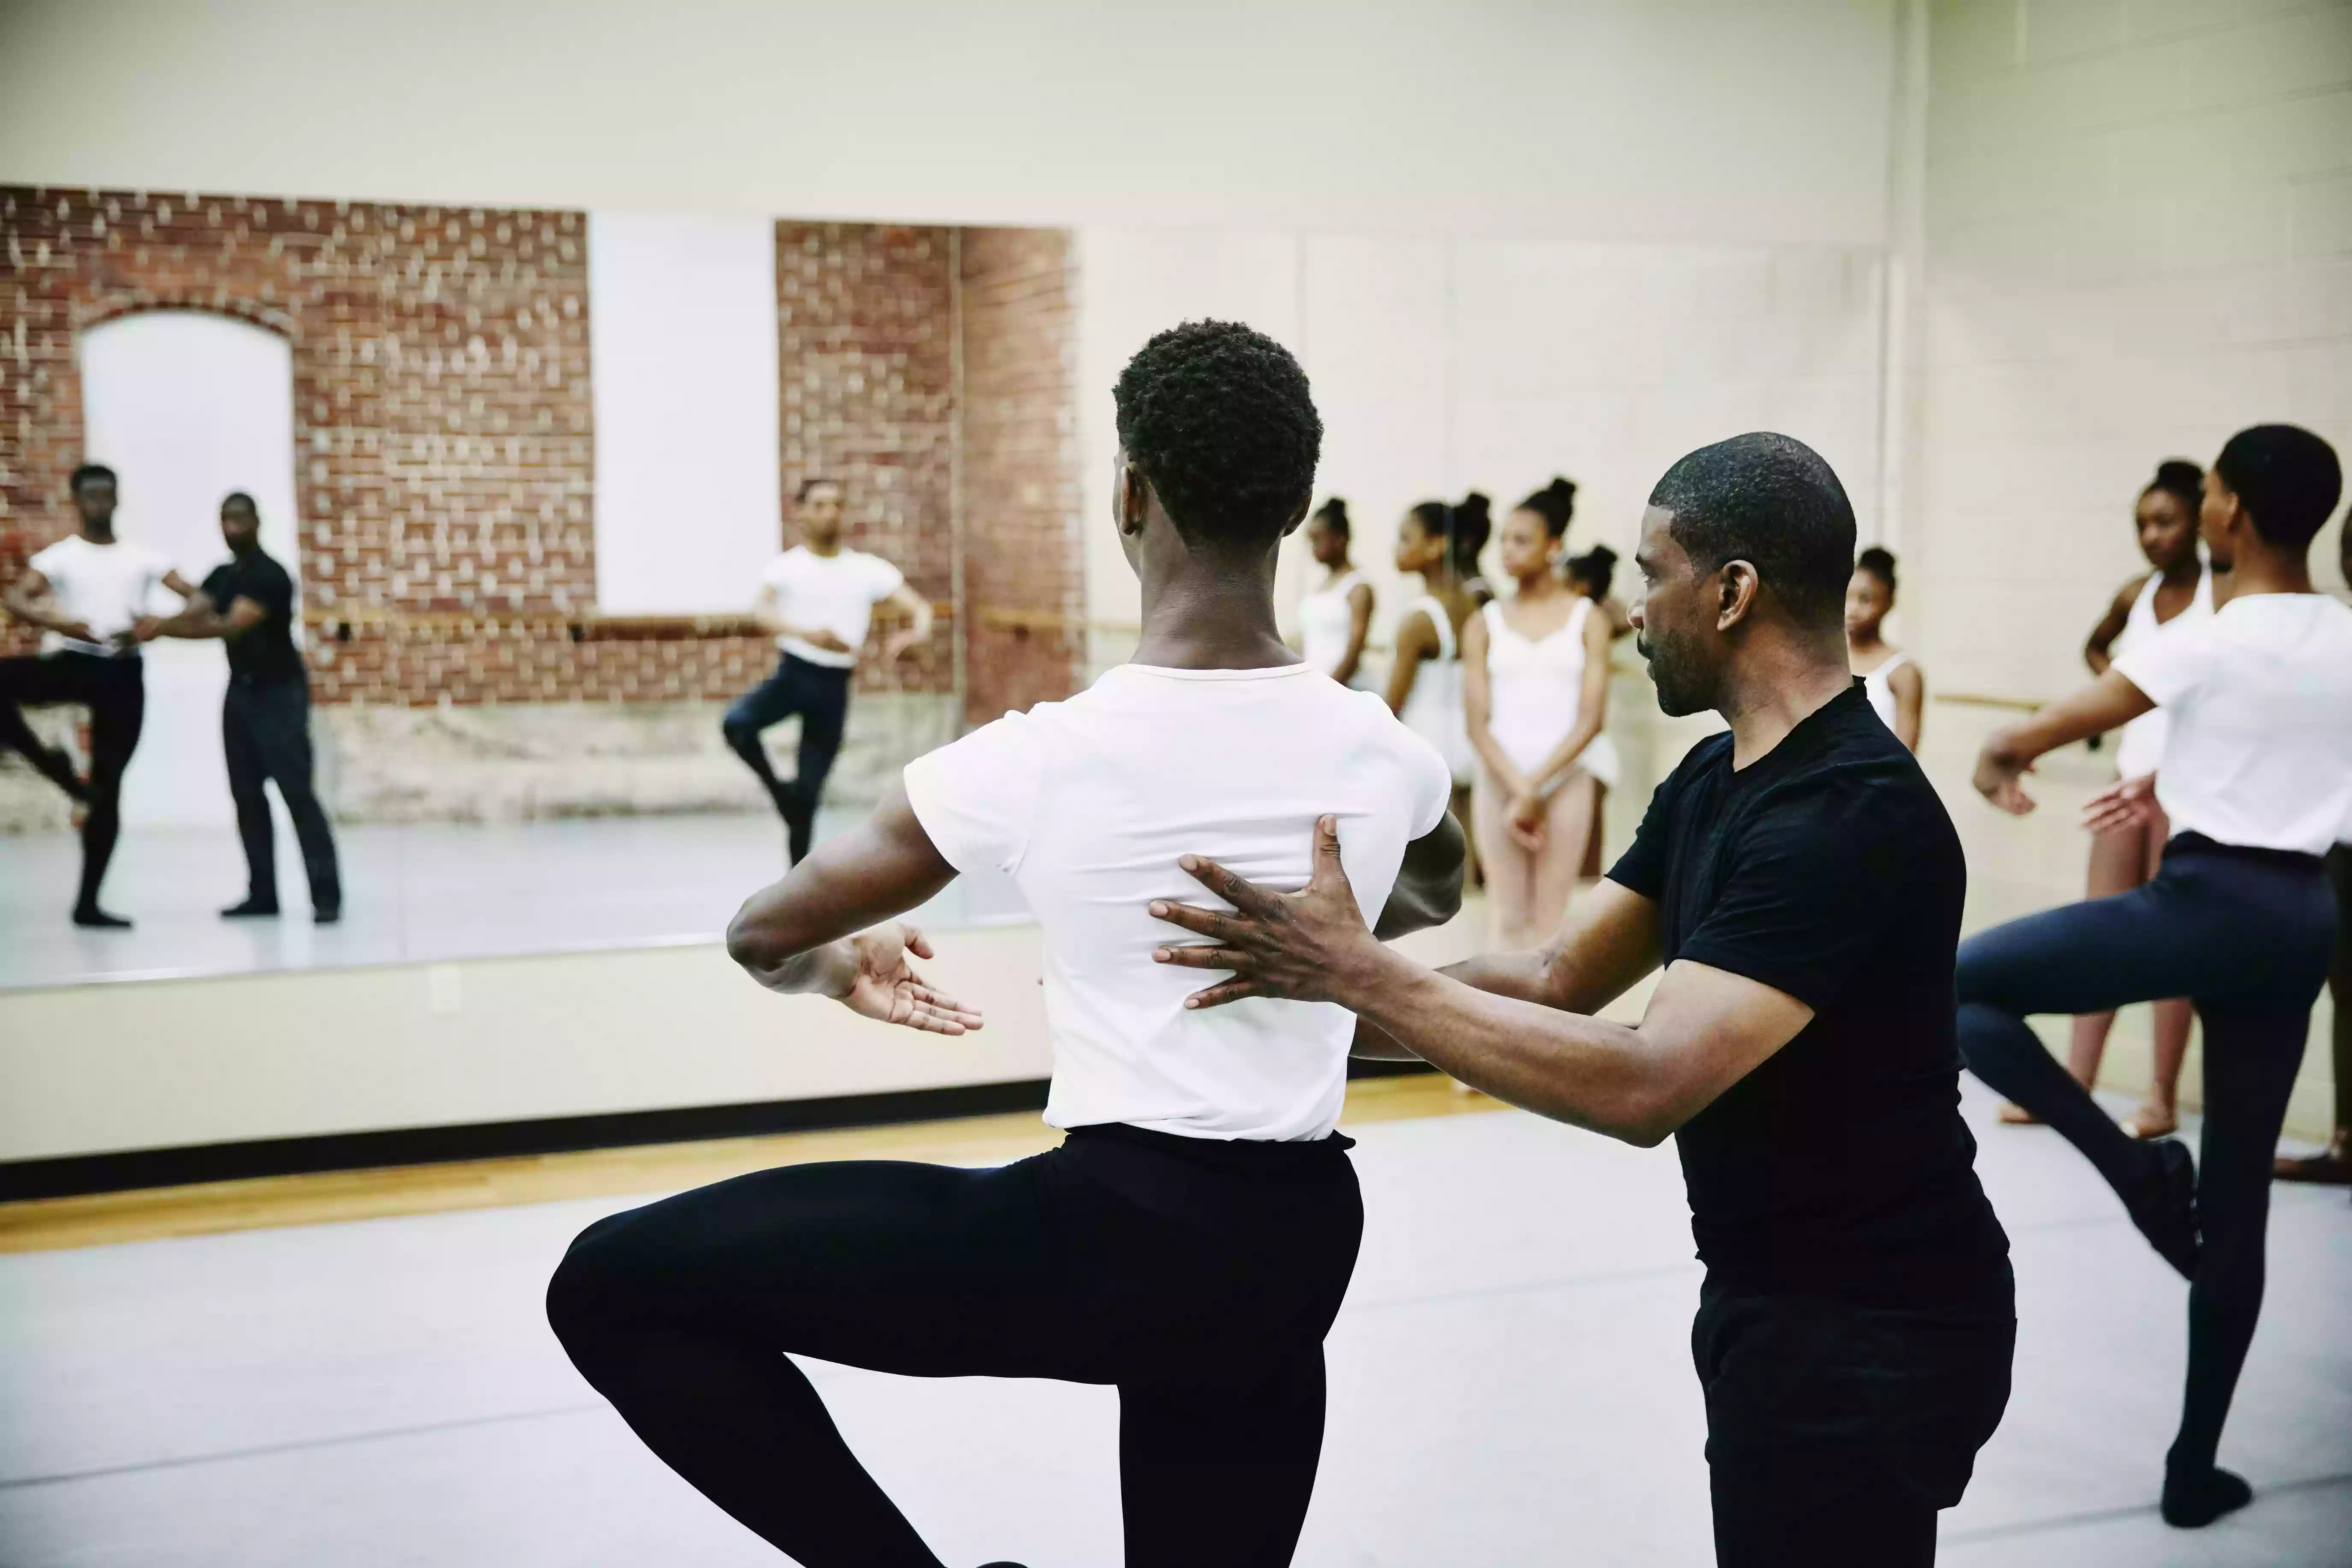 Ballet instructor adjusting students form